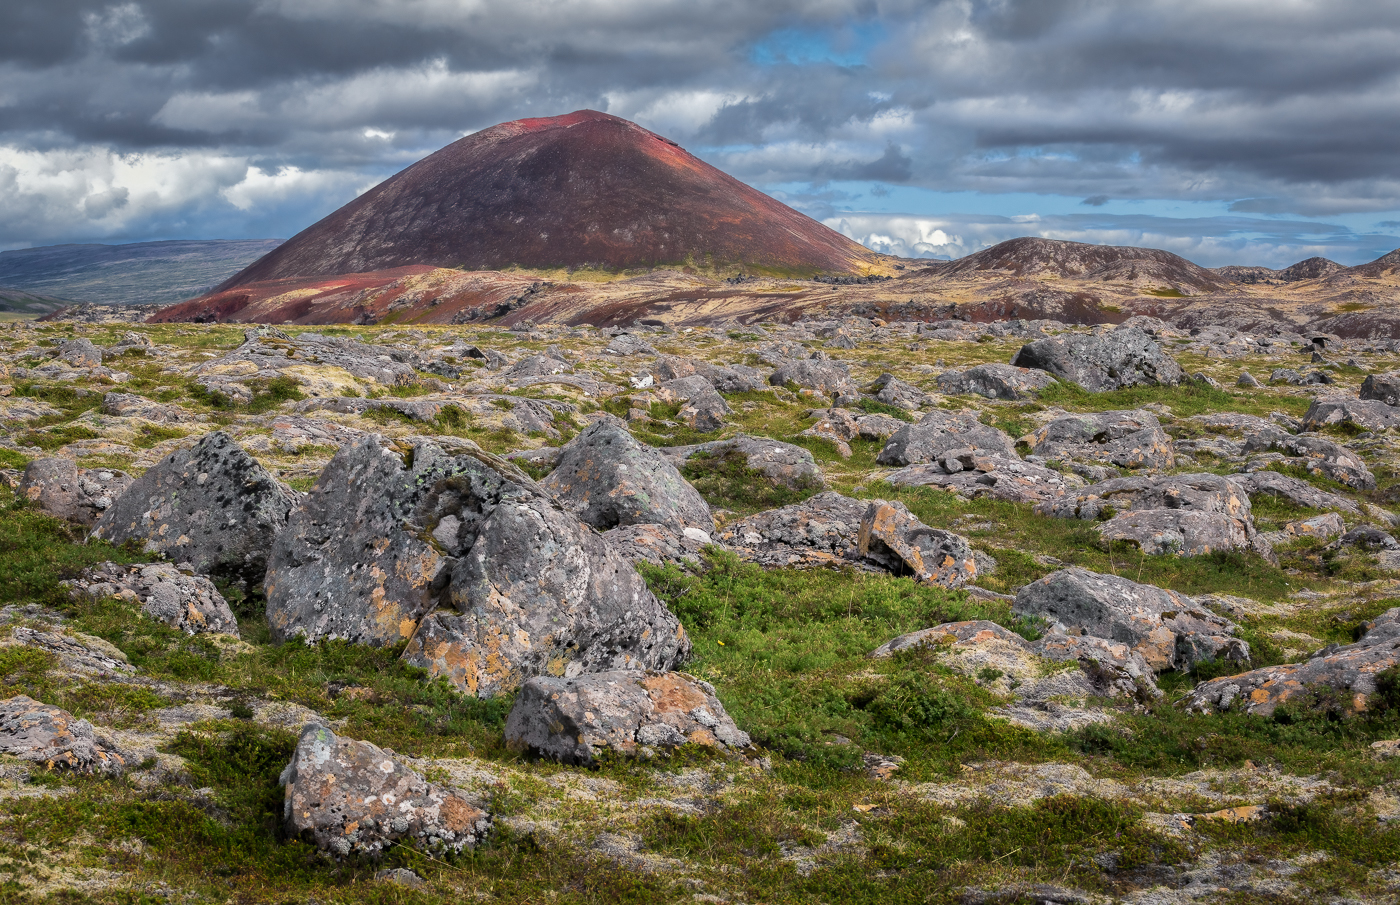 Piccoli crateri rossi si innalzano da antichi campi di lava oggi totalmente trasformati. Variopinte testimonianze di un passato burrascoso. Islanda.